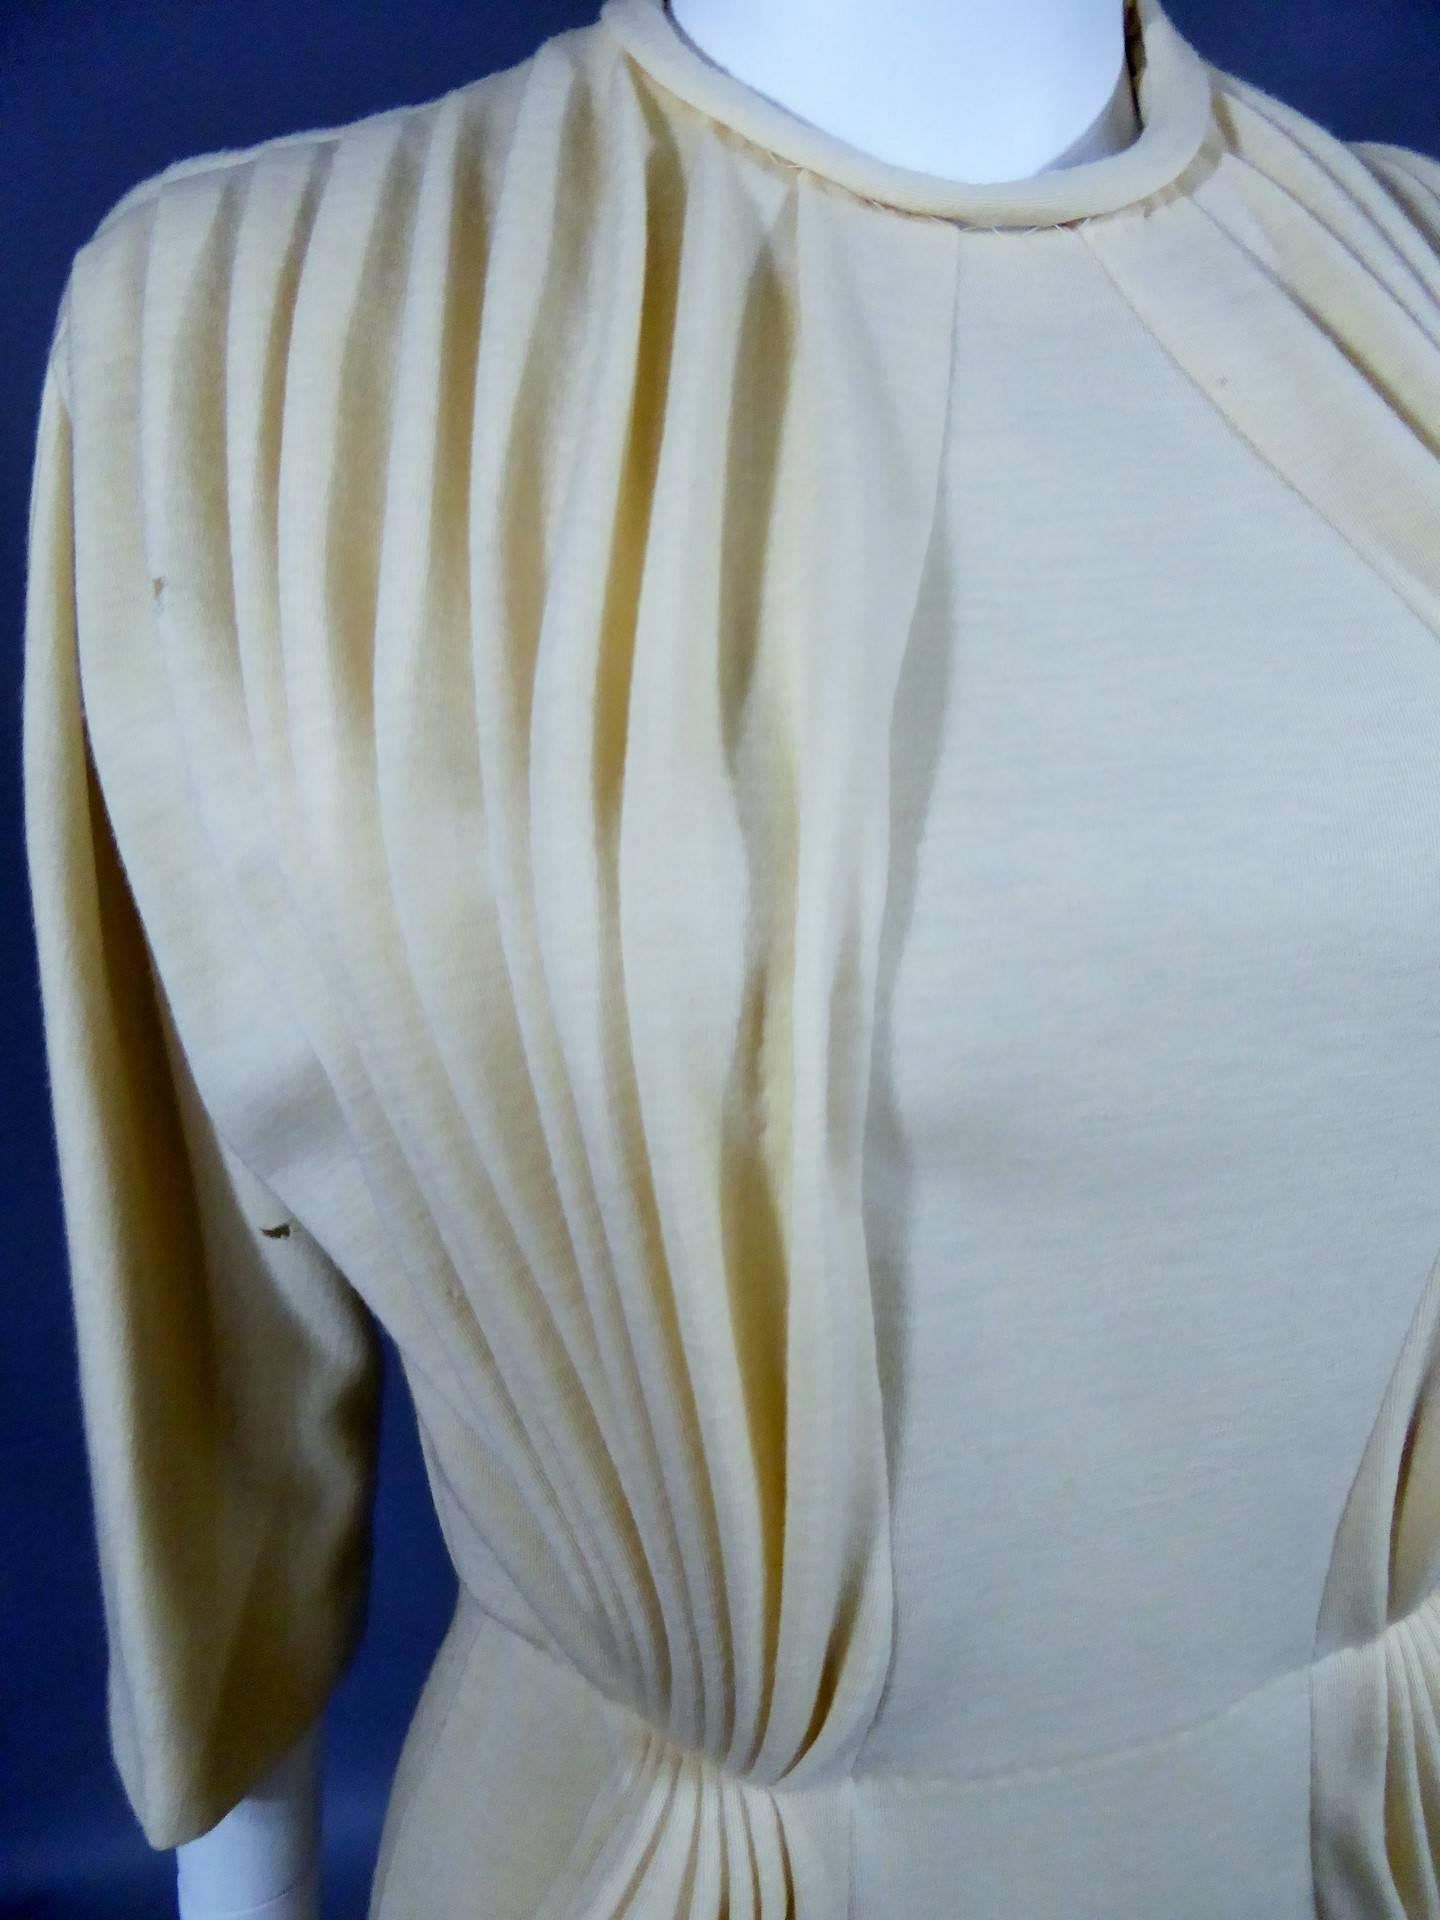 Circa 1970

France
 
Prototype ou robe de parade attribuée à Madame Grès et datant des années 1970. Bolduc de coton blanc cousu indiquant le n° 144 à Christine Vicky. Jersey de laine beige, non doublé. Un travail de plissage accentue les poches sur